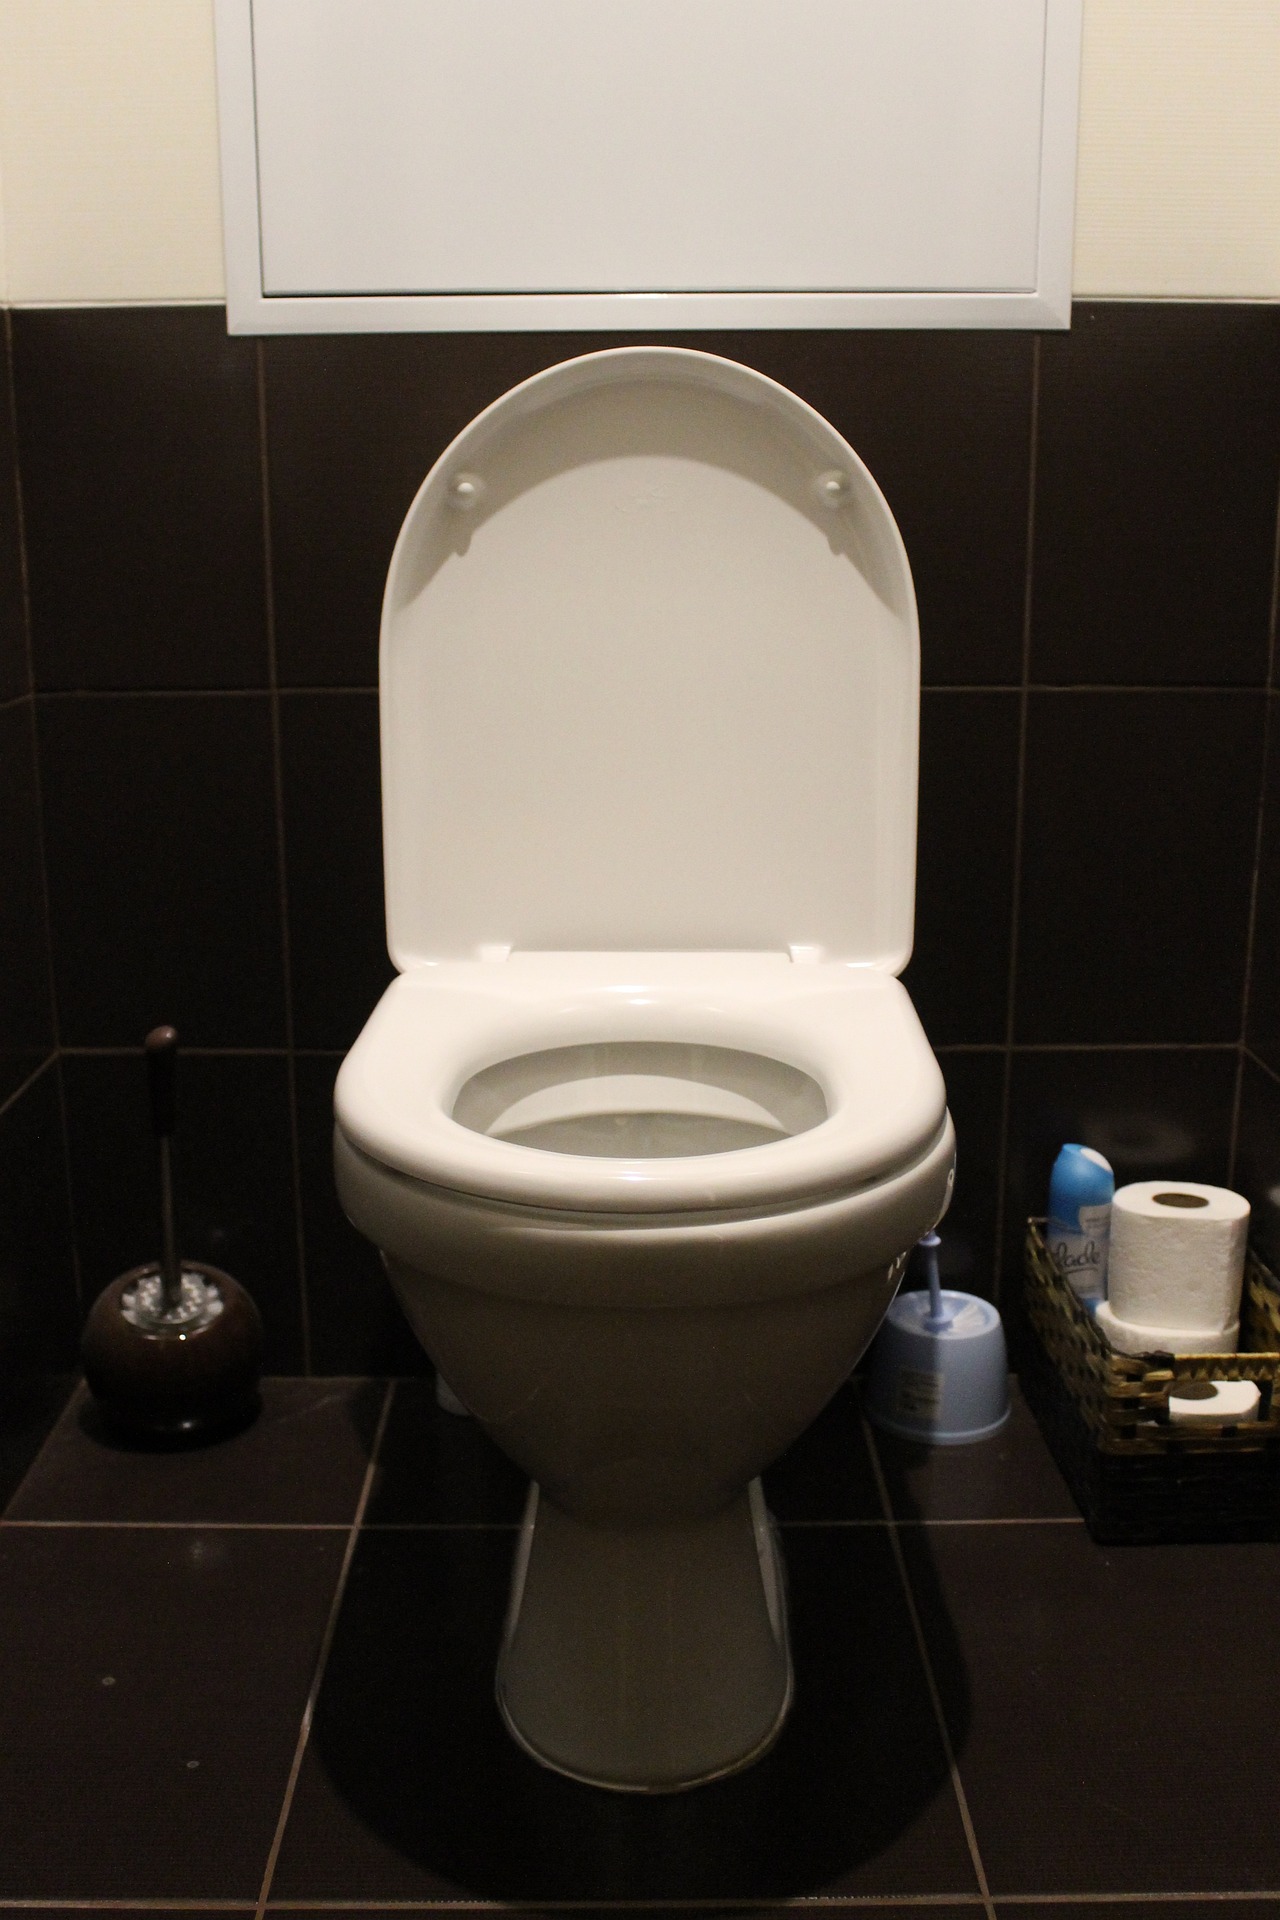 VIDEO Predstavljen novi uređaj koji se postavlja u WC školjku i analizira urin korisnika